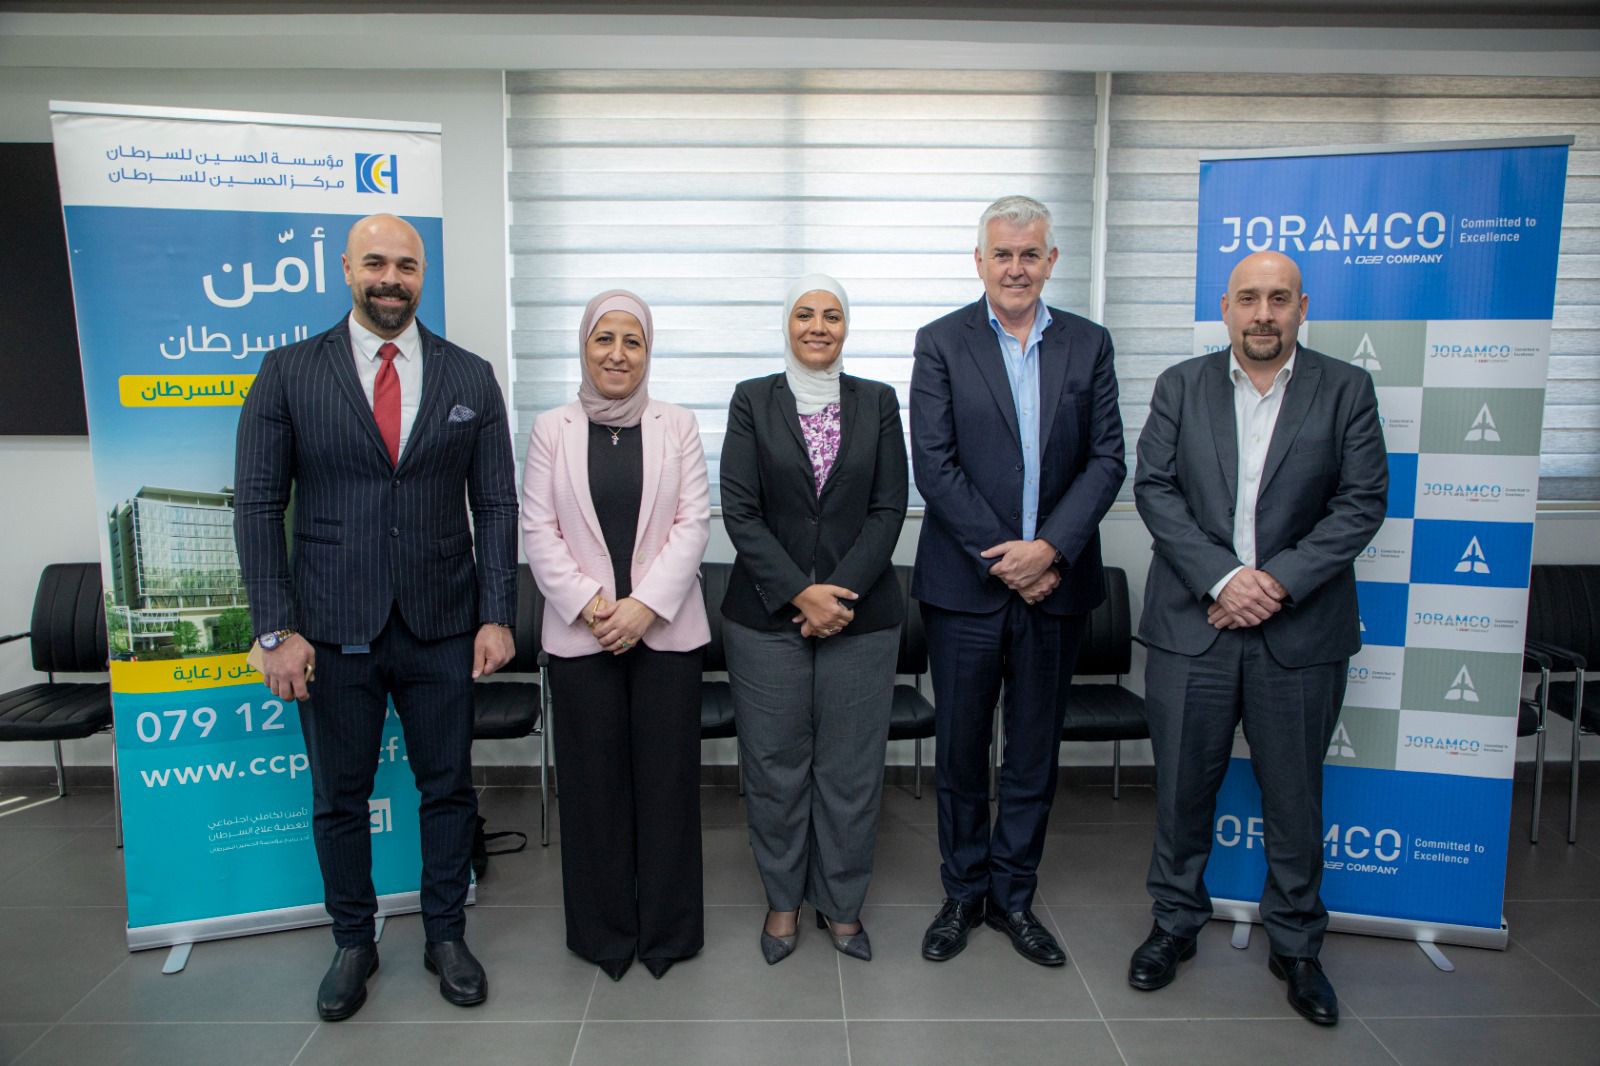 مؤسسة الحسين للسرطان توقّع اتفاقيّة مع الشركة الأردنية لصيانة الطائرات جورامكو لتأمين موظفي وعائلات الشركة من القطاع العسكري والخاص